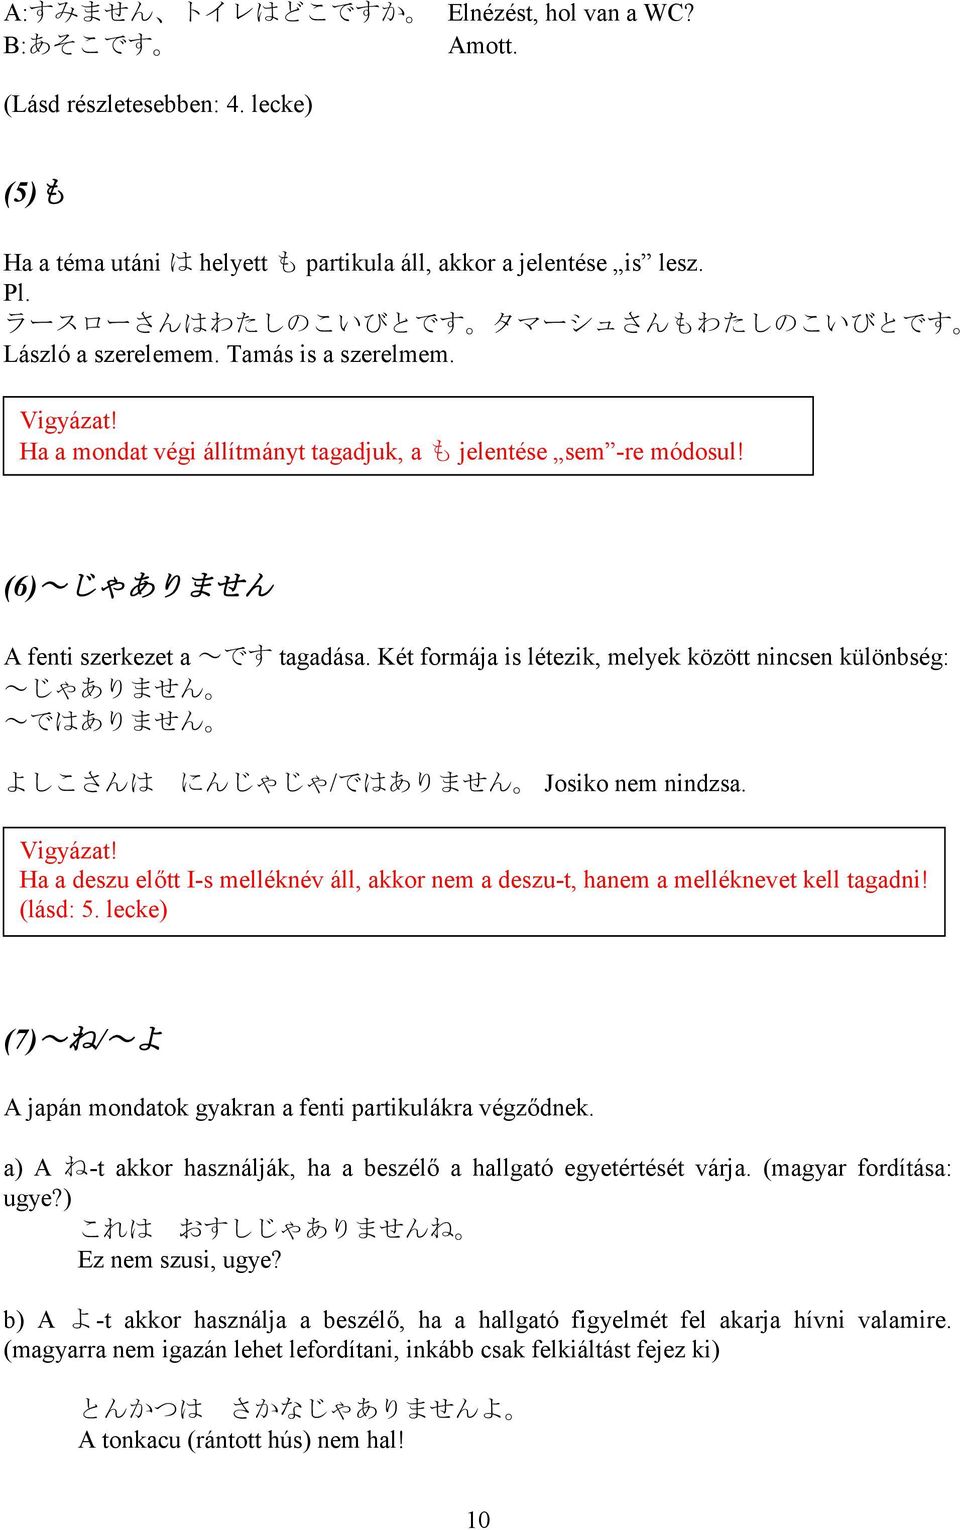 (6)~じゃありません A fenti szerkezet a ~です tagadása. Két formája is létezik, melyek között nincsen különbség: ~じゃありません ~ではありません よしこさんは にんじゃじゃ/ではありません Josiko nem nindzsa. Vigyázat!